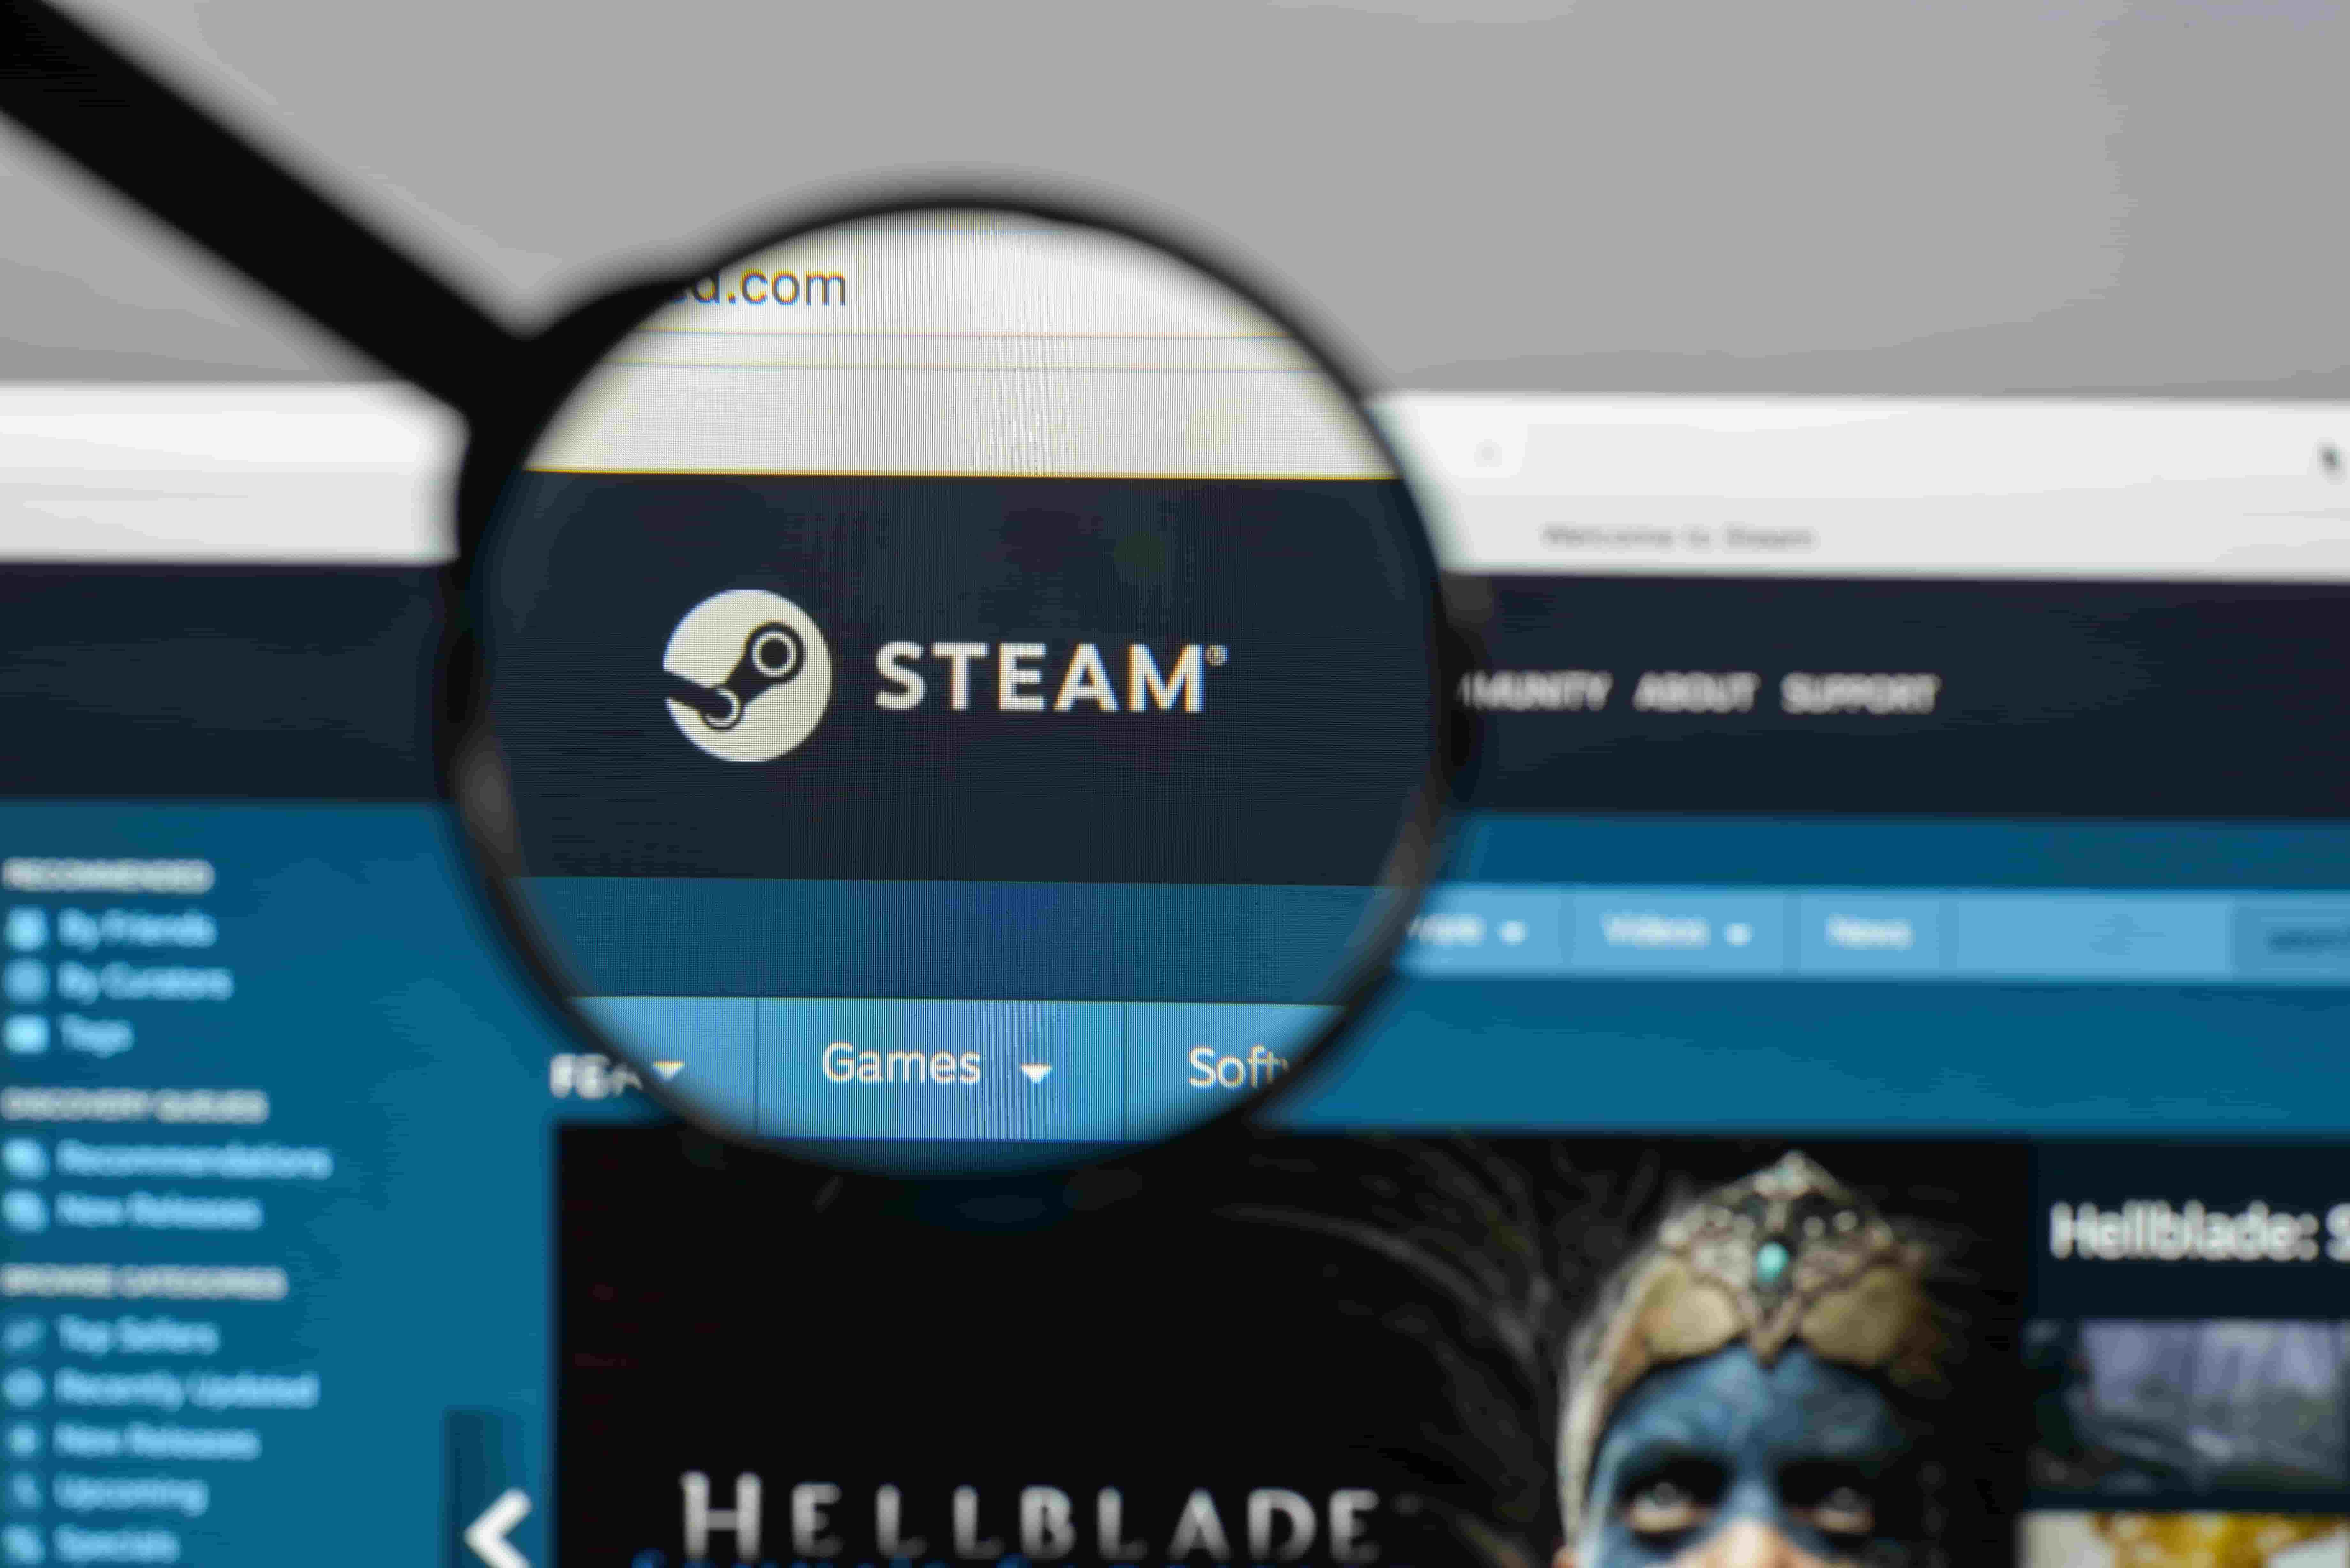 Buy Steam ID Viewer - Microsoft Store en-MH